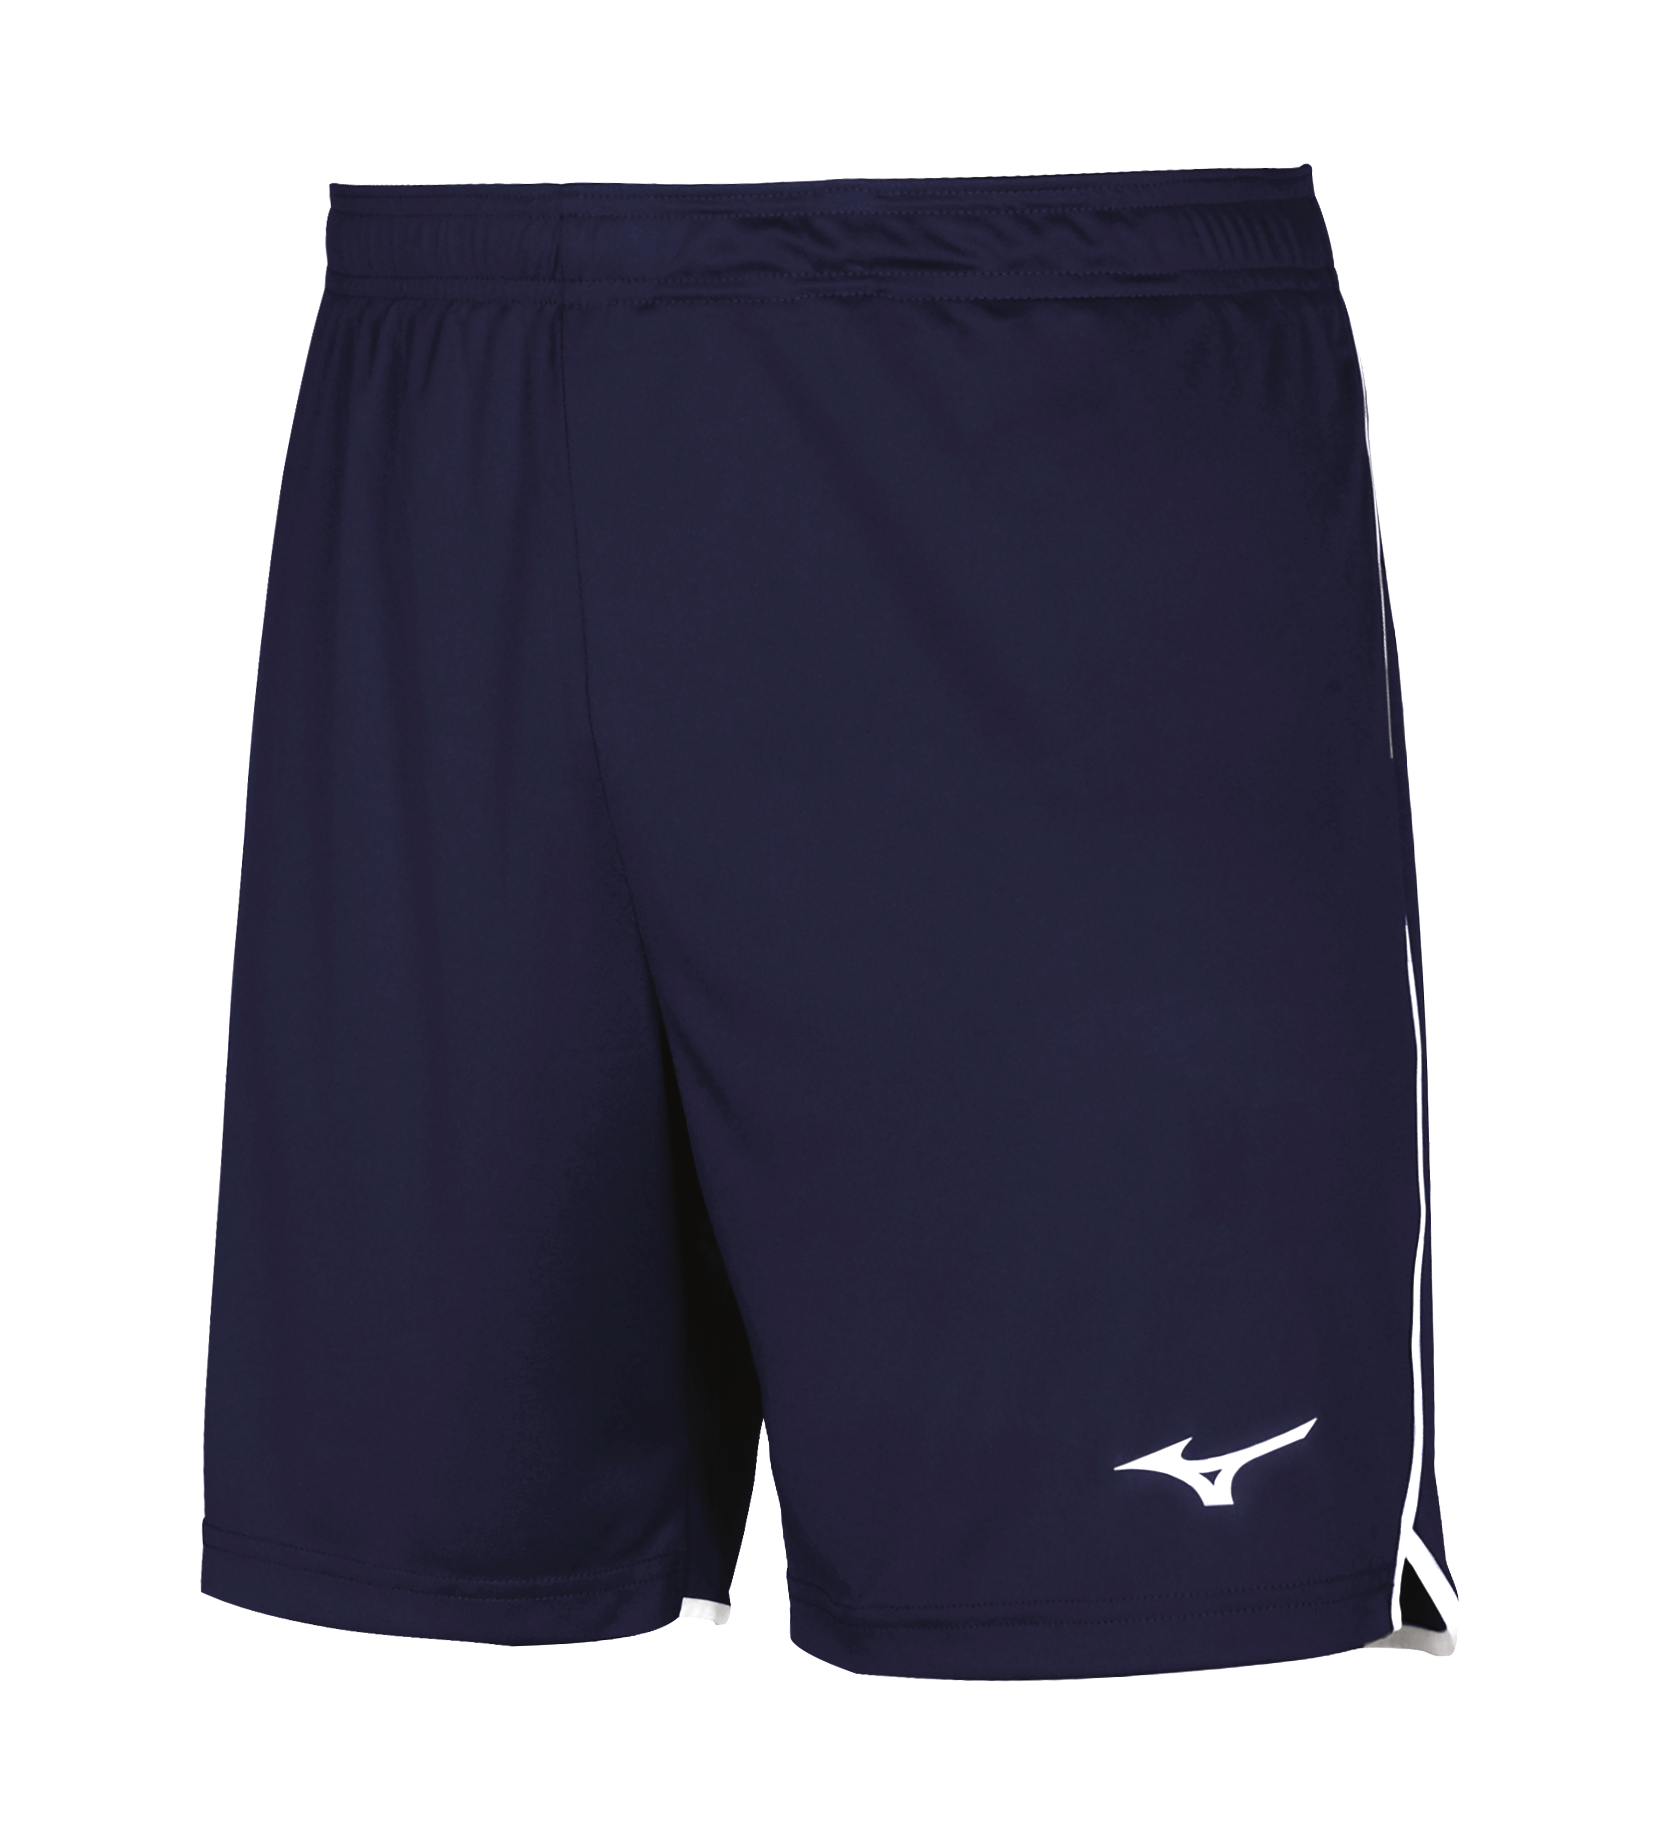 Спортивные шорты мужские Mizuno V2EB7001 синие M - купить в ABM Sport, цена на Мегамаркет